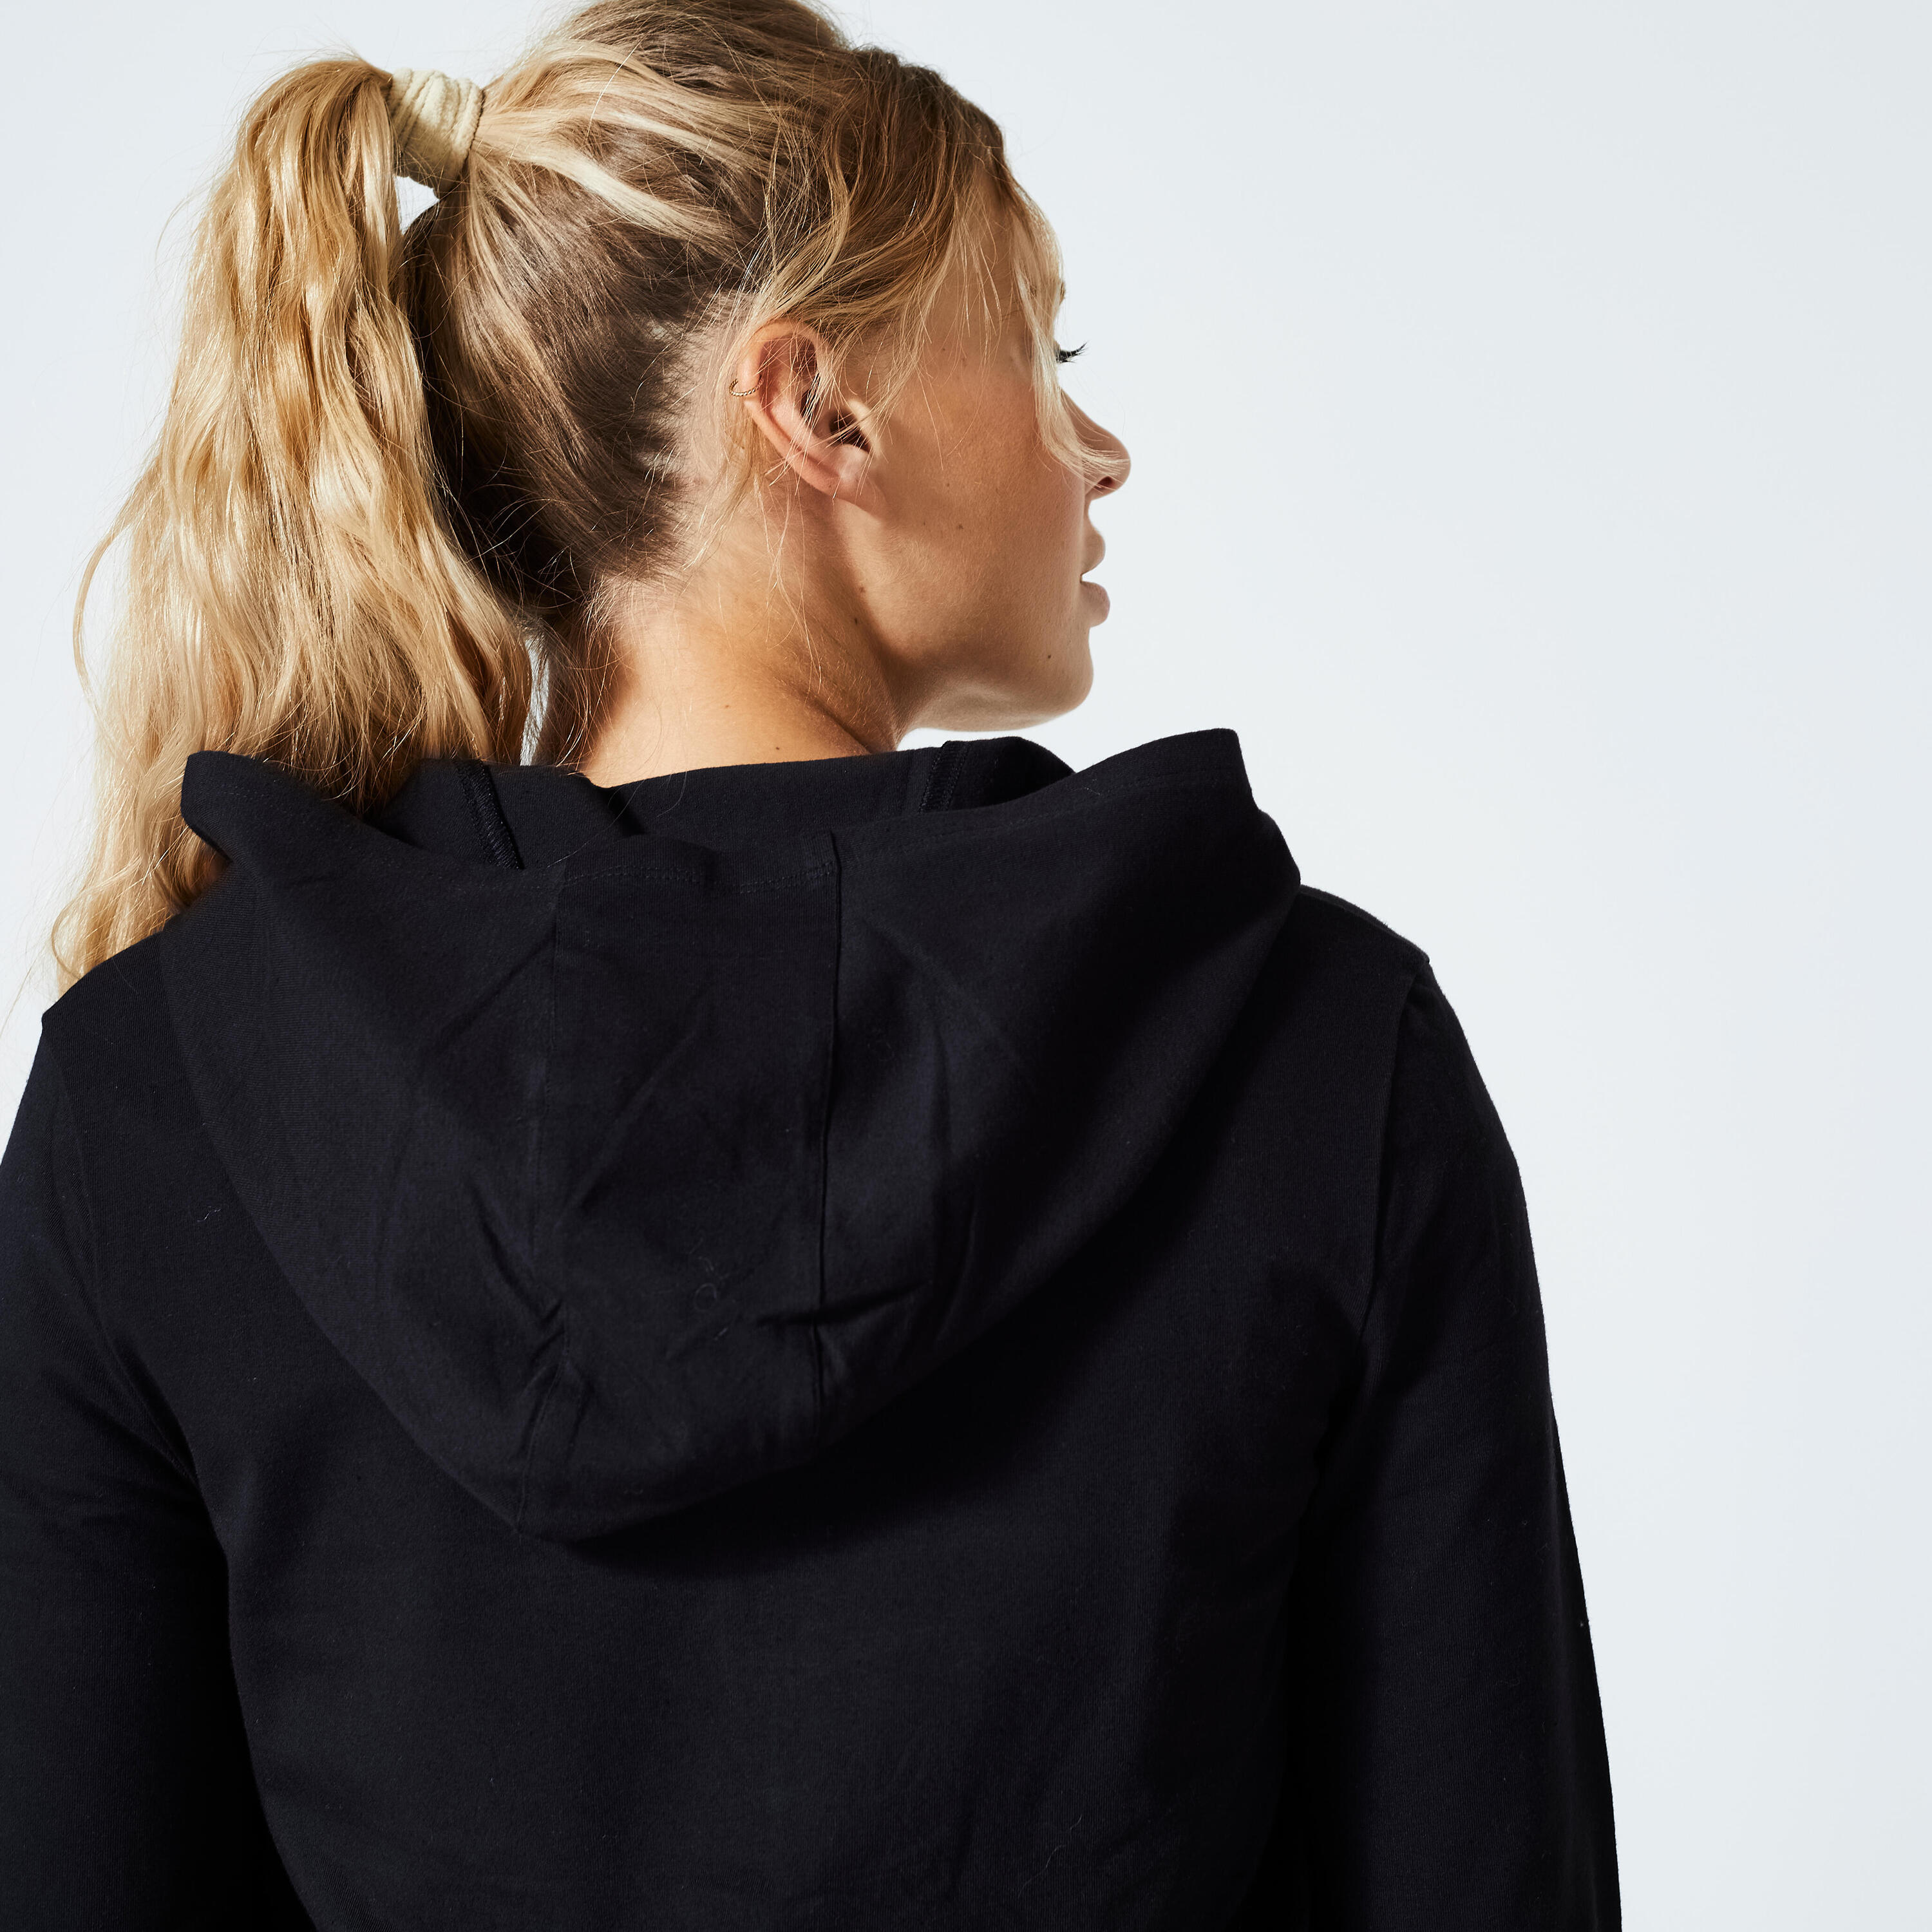 Women's Fitness Zip-Up Sweatshirt 100 - Black 5/5